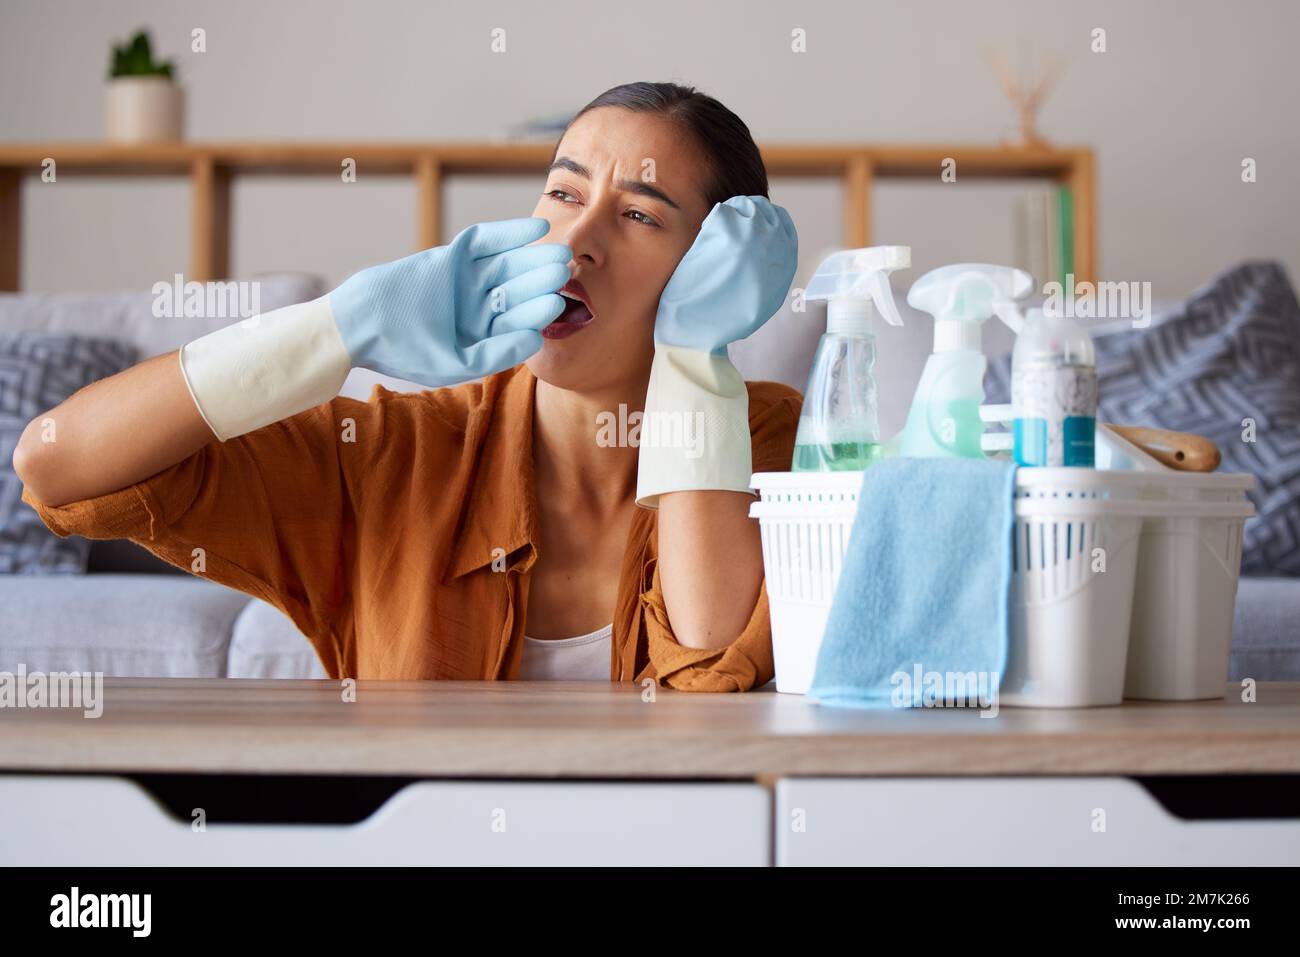 Putzen, gähnen und müde mit einer Haushälterin, die gähnt, während sie als Putzfrau in einem Heim arbeitet. Sauber, gelangweilt und hygienisch mit weiblichem Leiden Stockfoto